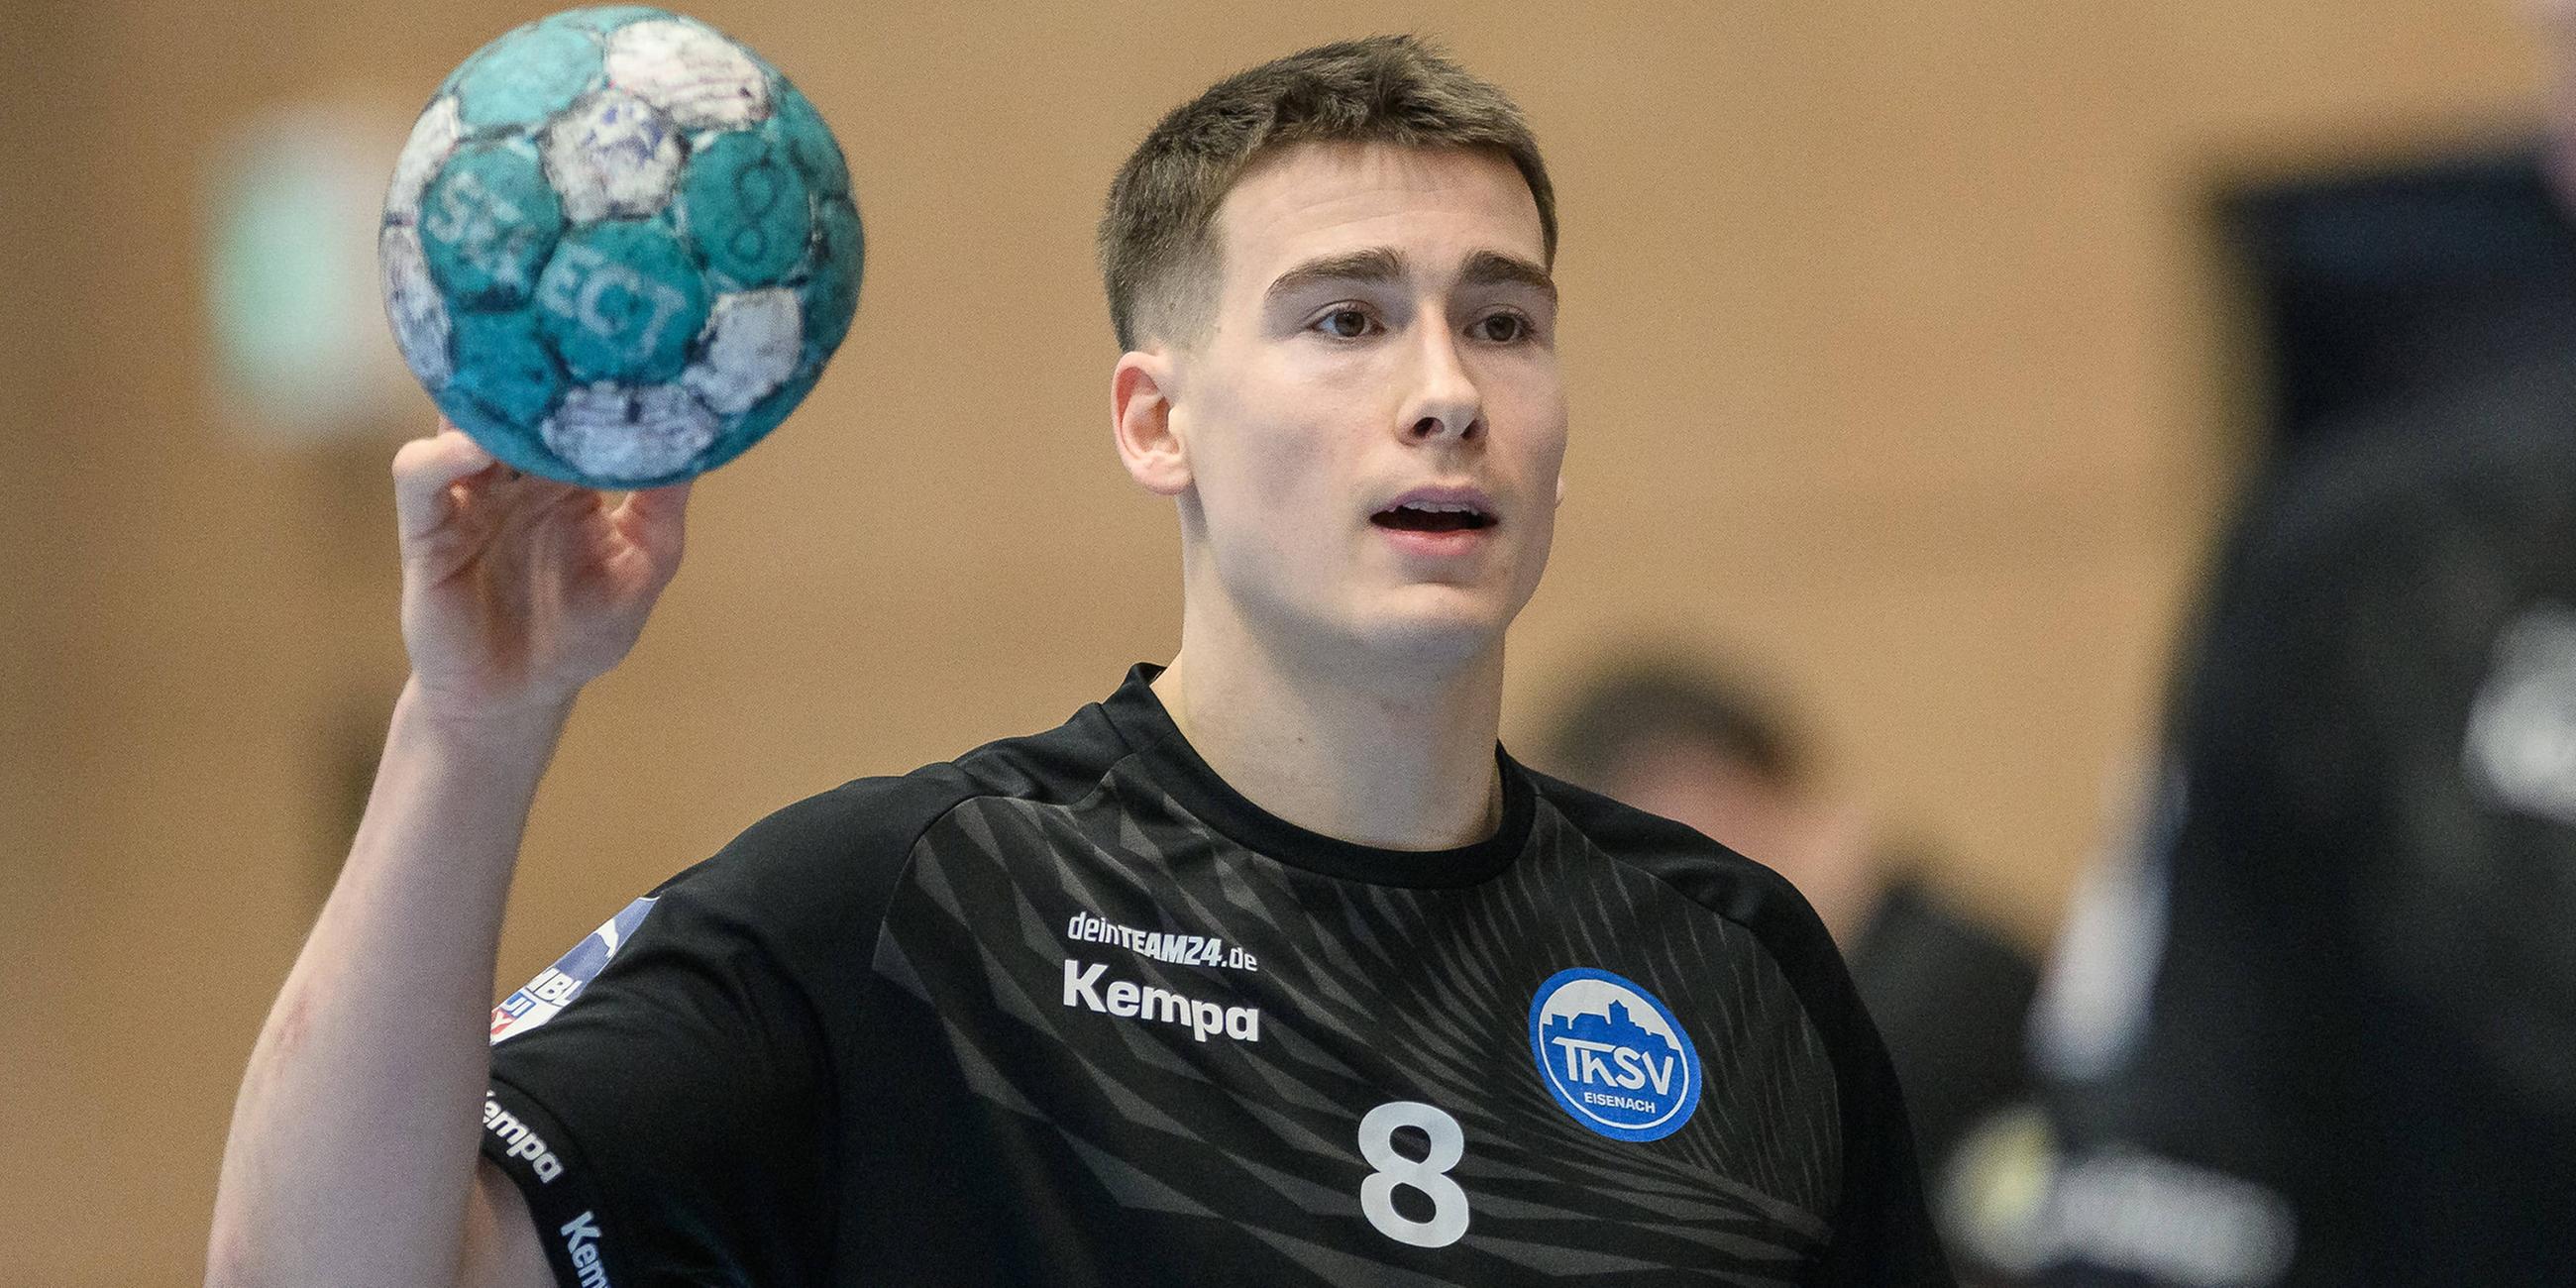 Der Schweizer Handball-Nationalspieler Manuel Zehnder während einem Spiel.